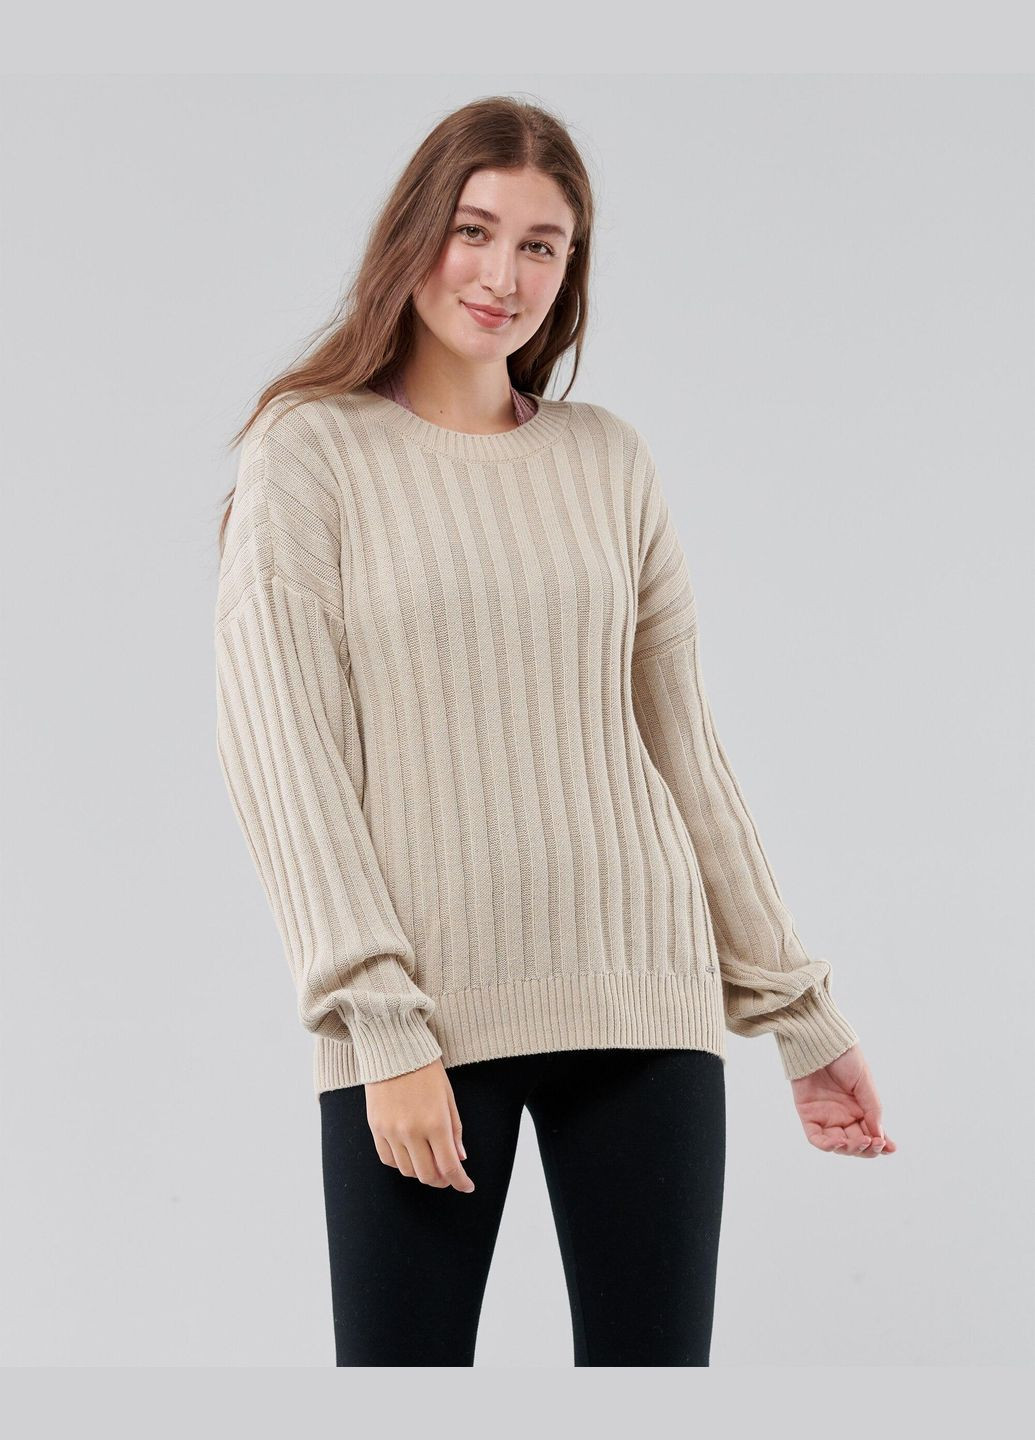 Бежевый демисезонный свитер женский - свитер hc8800w Hollister